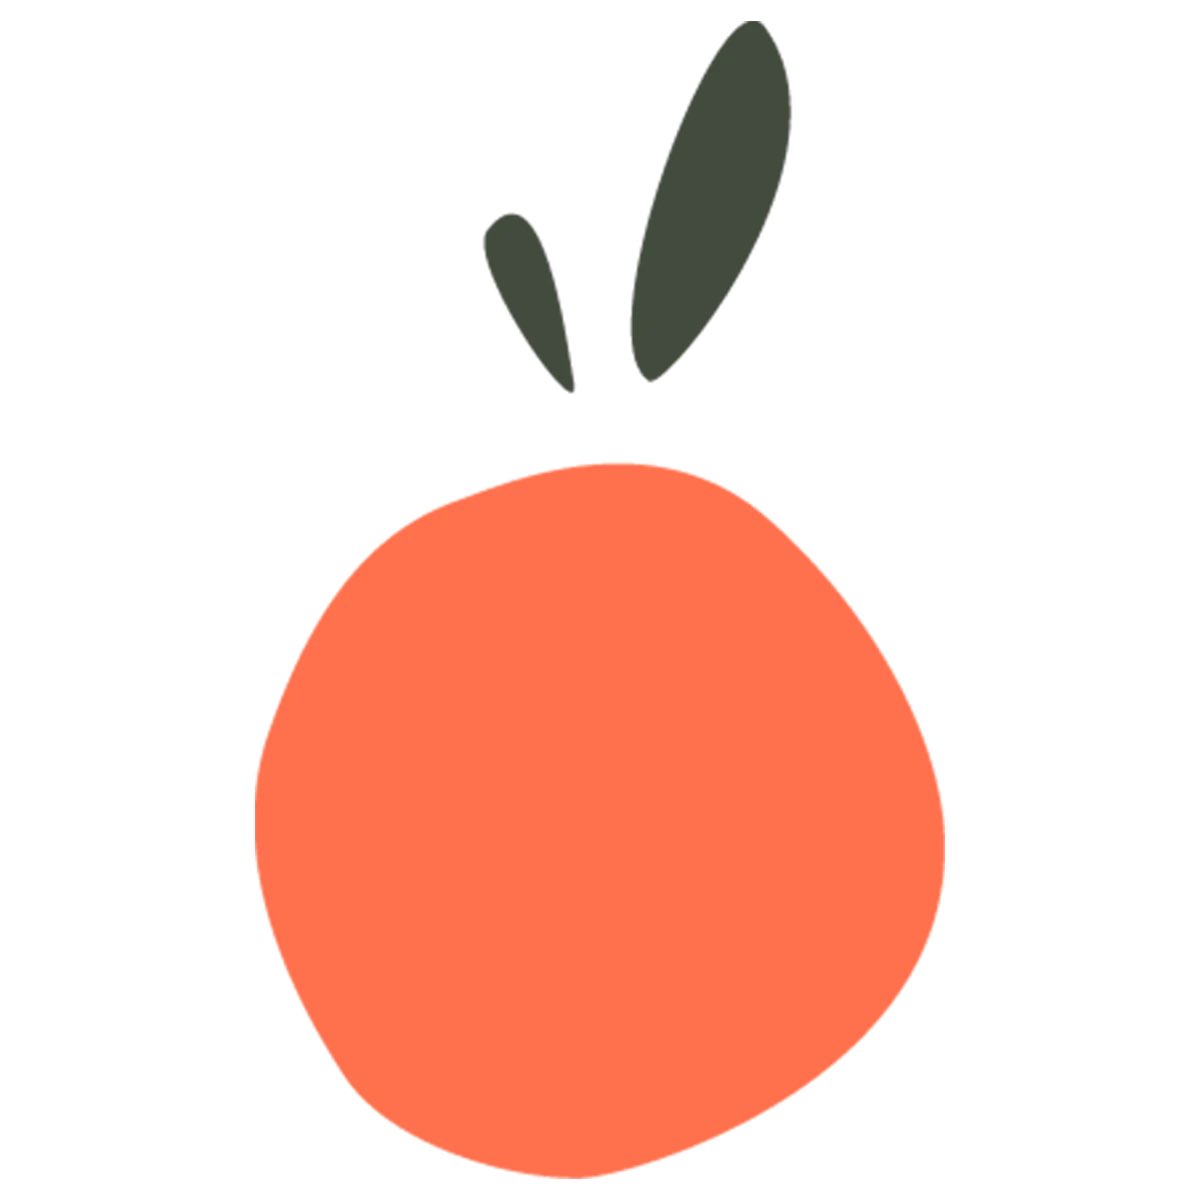 1 - Lucky Orange Application pour pouvoir enregistrer et analyser le comportements des utilisateurs du sites.